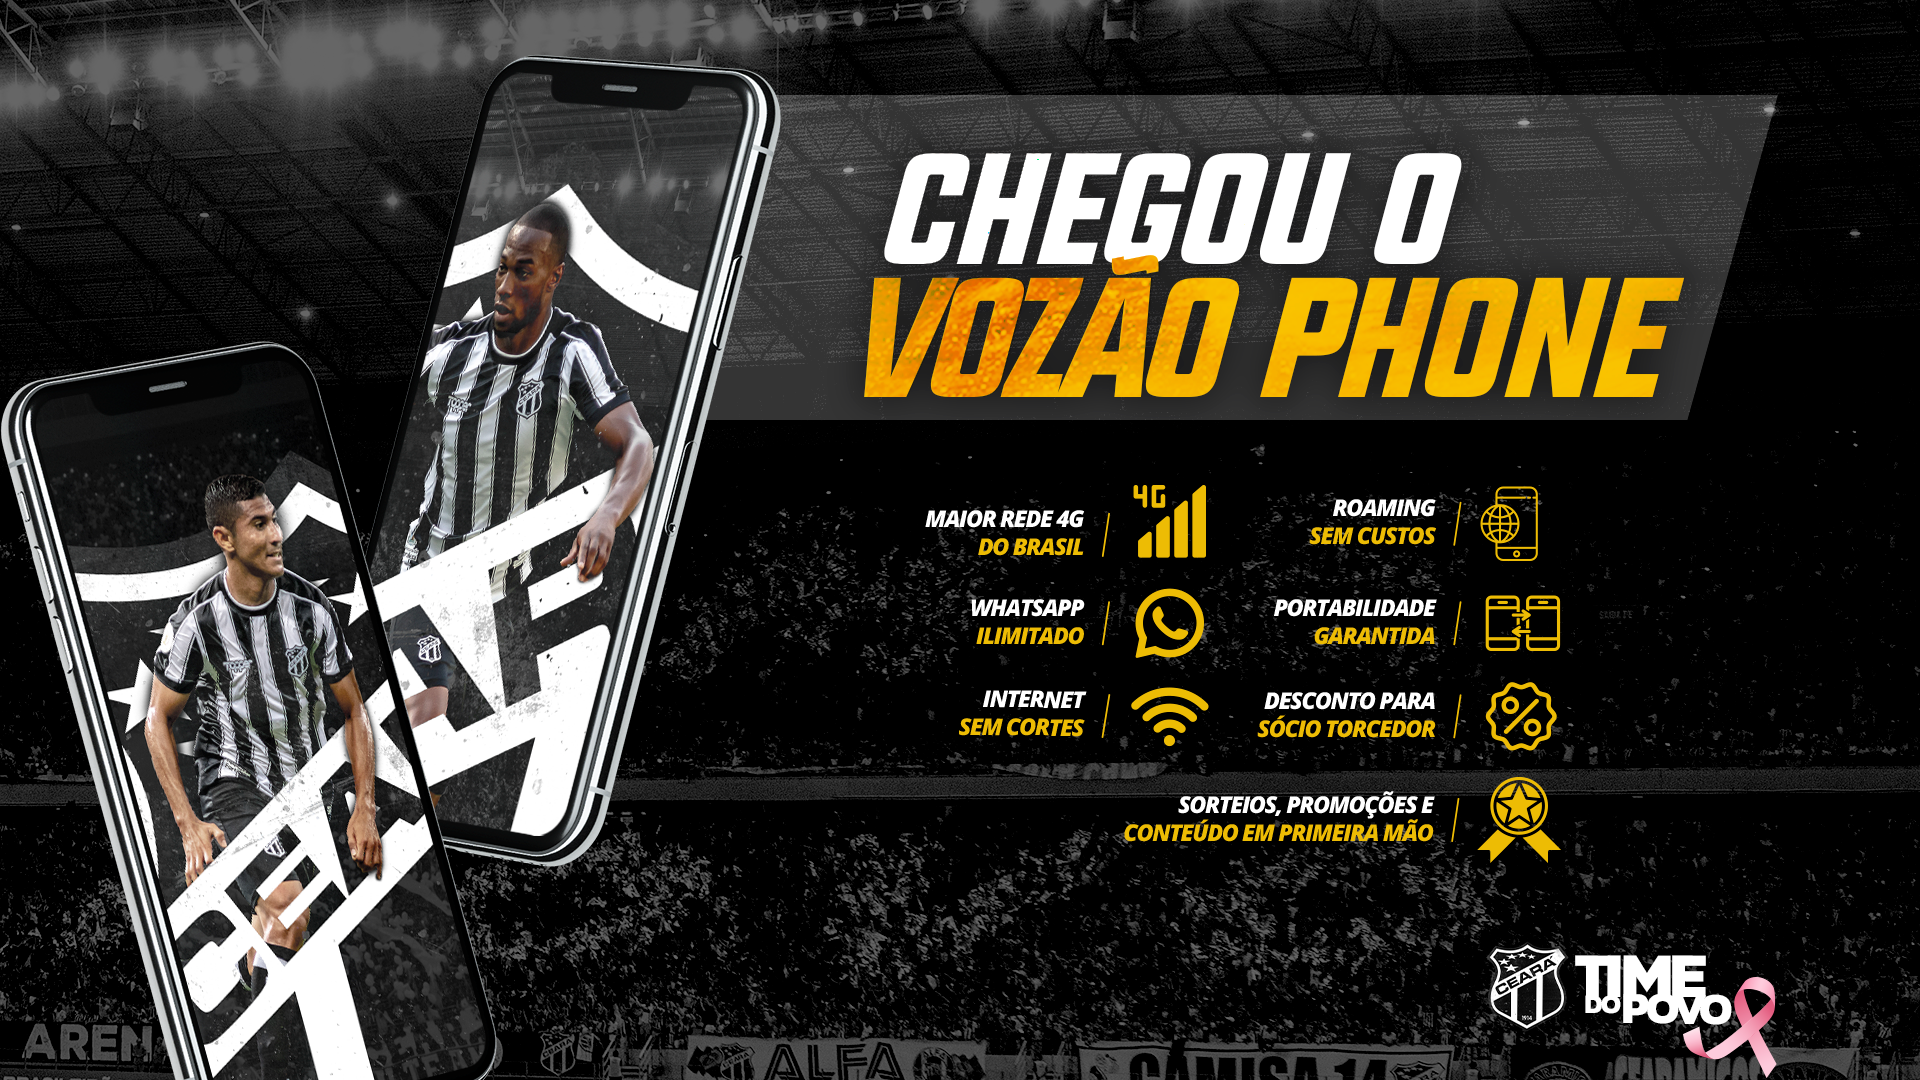 Ceará passará a oferecer serviço de telefonia móvel oficial do clube